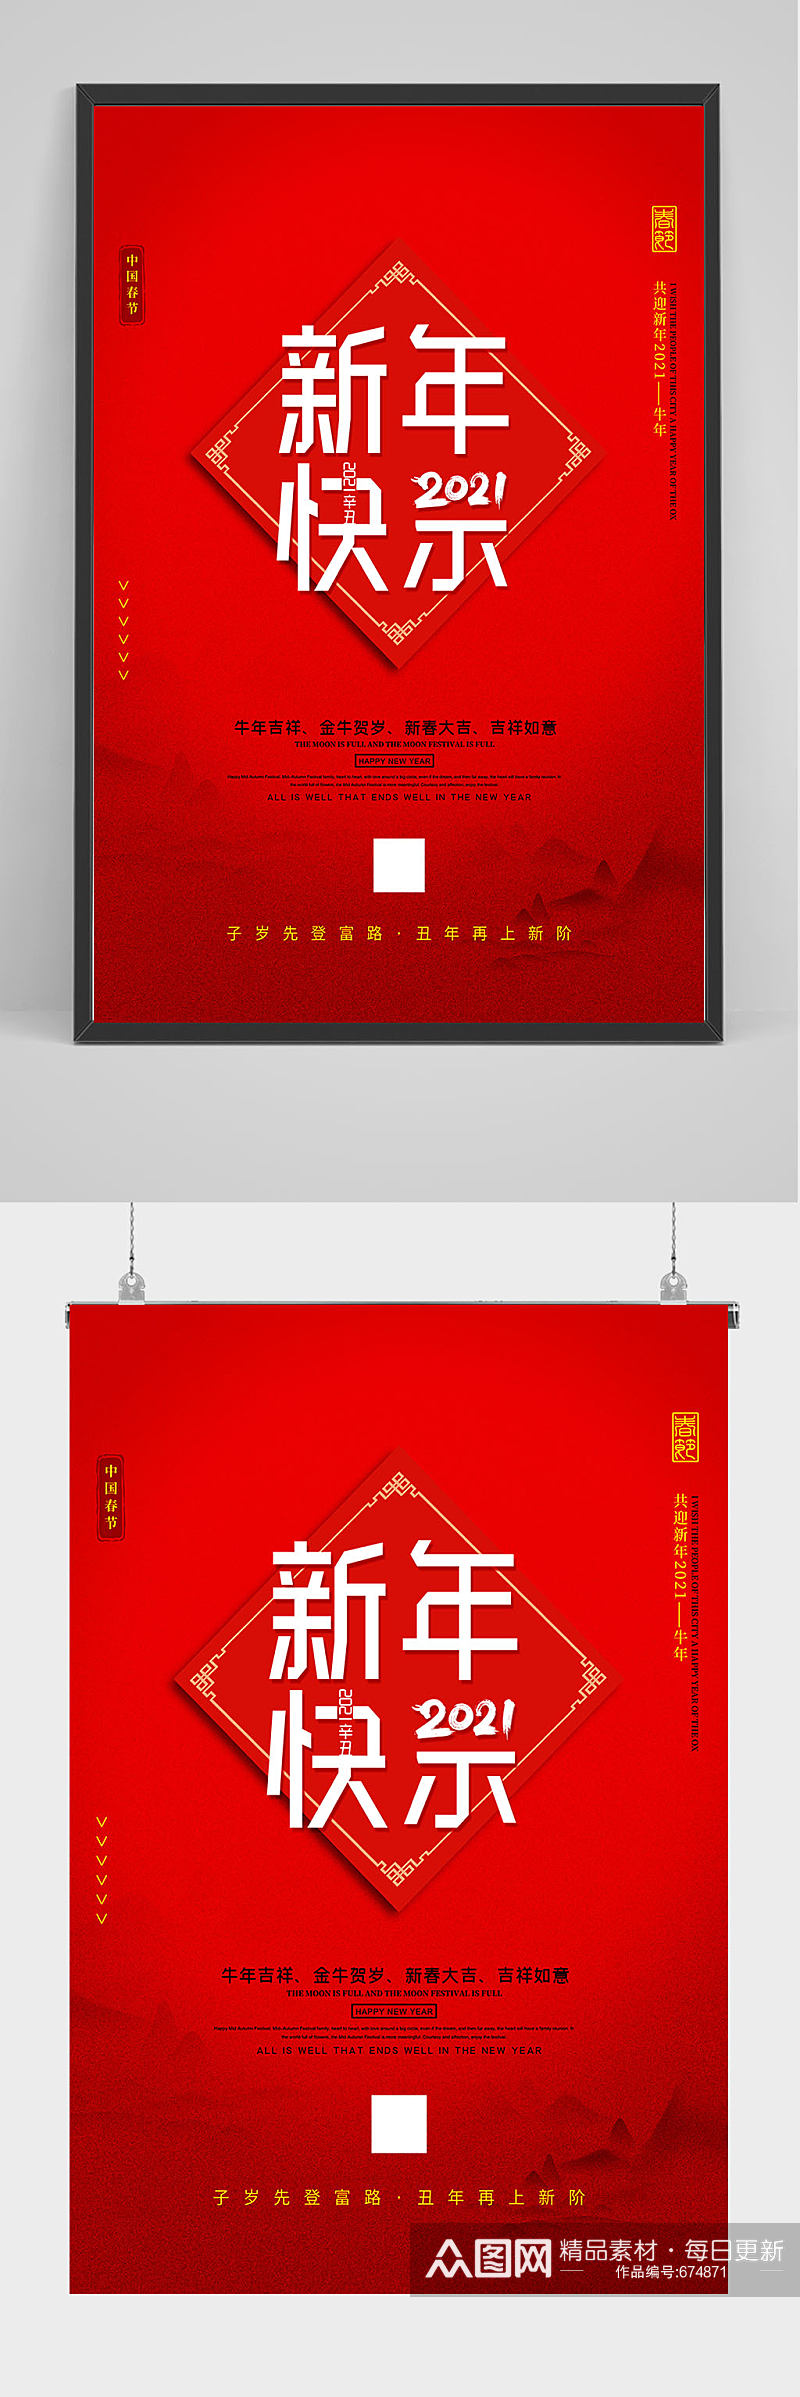 红色喜庆新年快乐海报设计素材